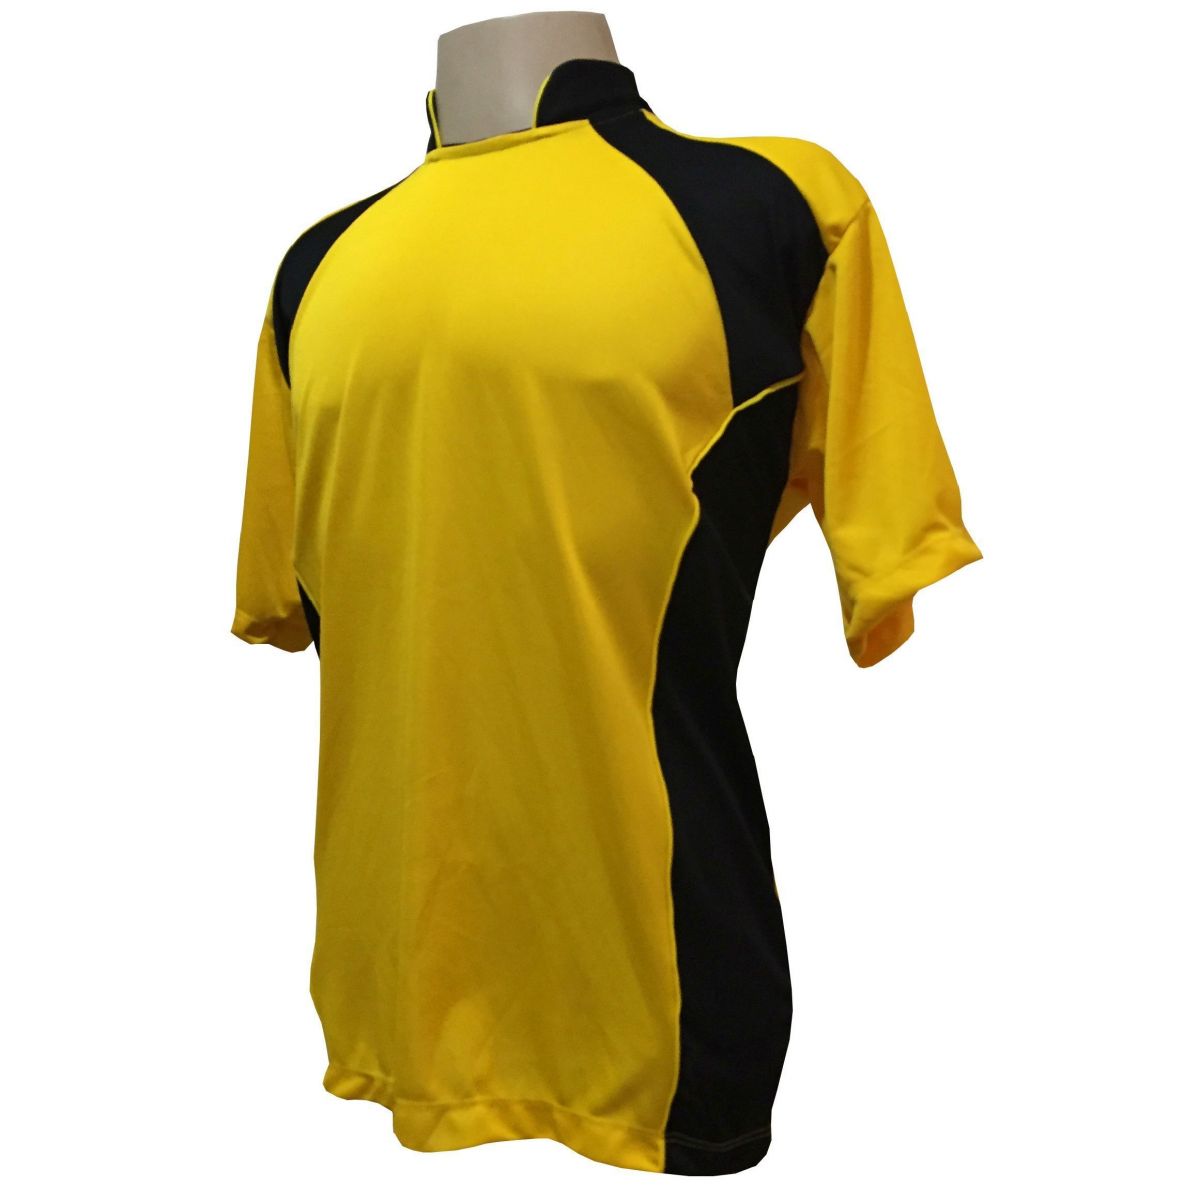 Uniforme Esportivo Completo Modelo Suécia 14+1 (14 Camisas Amarelo/Preto + 14 Calções Modelo Copa Preto/Amarelo + 14 Pares de Meiões Pretos + 1 Conjunto de Goleiro) + Brindes